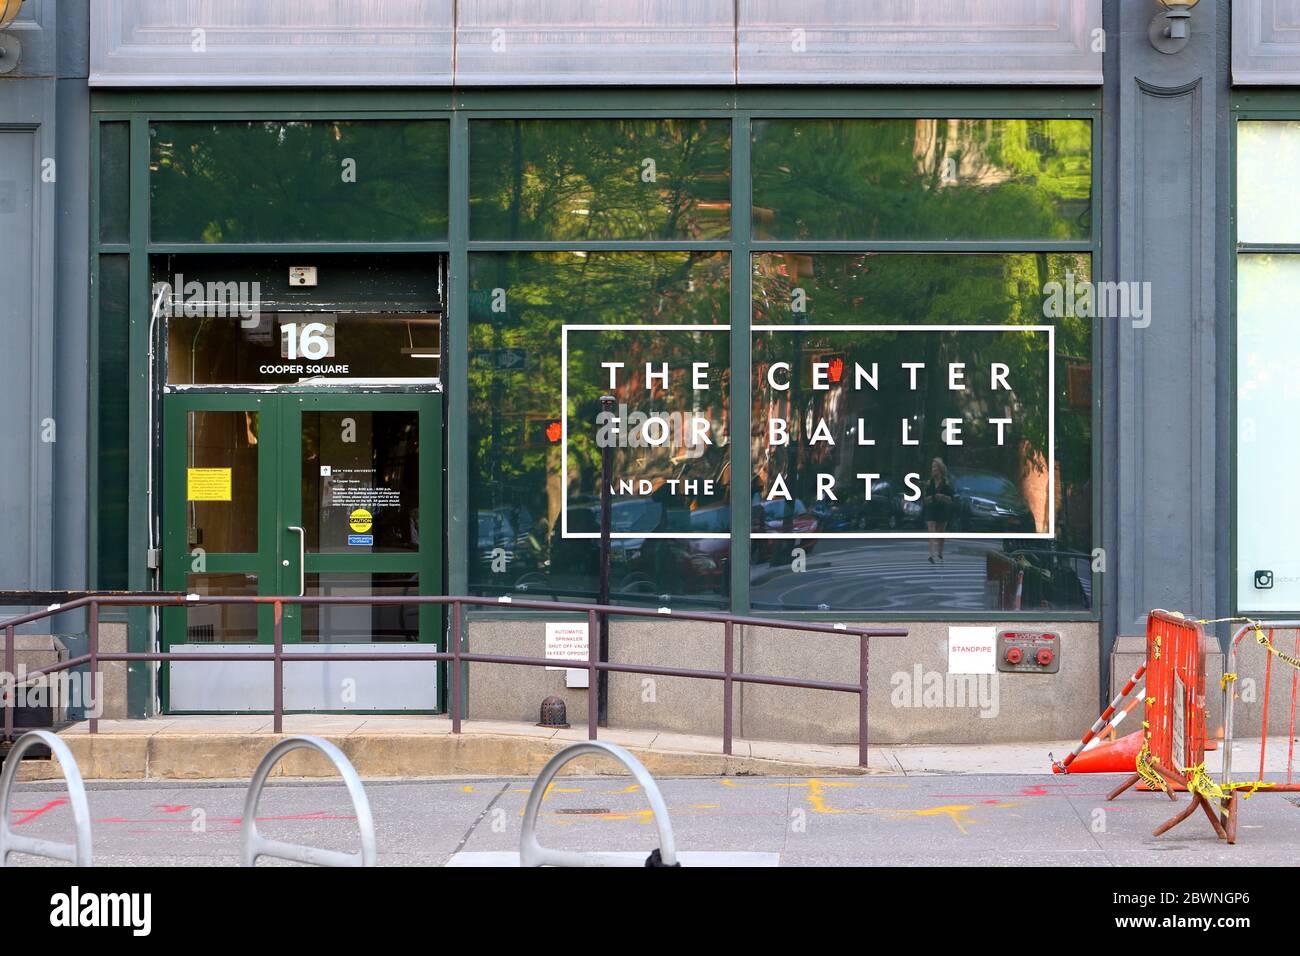 The Center for Ballet and the Arts, 16-20 Cooper Square, New York, New York. Esterno di una struttura della New York University per balletti moderni e coreografie Foto Stock